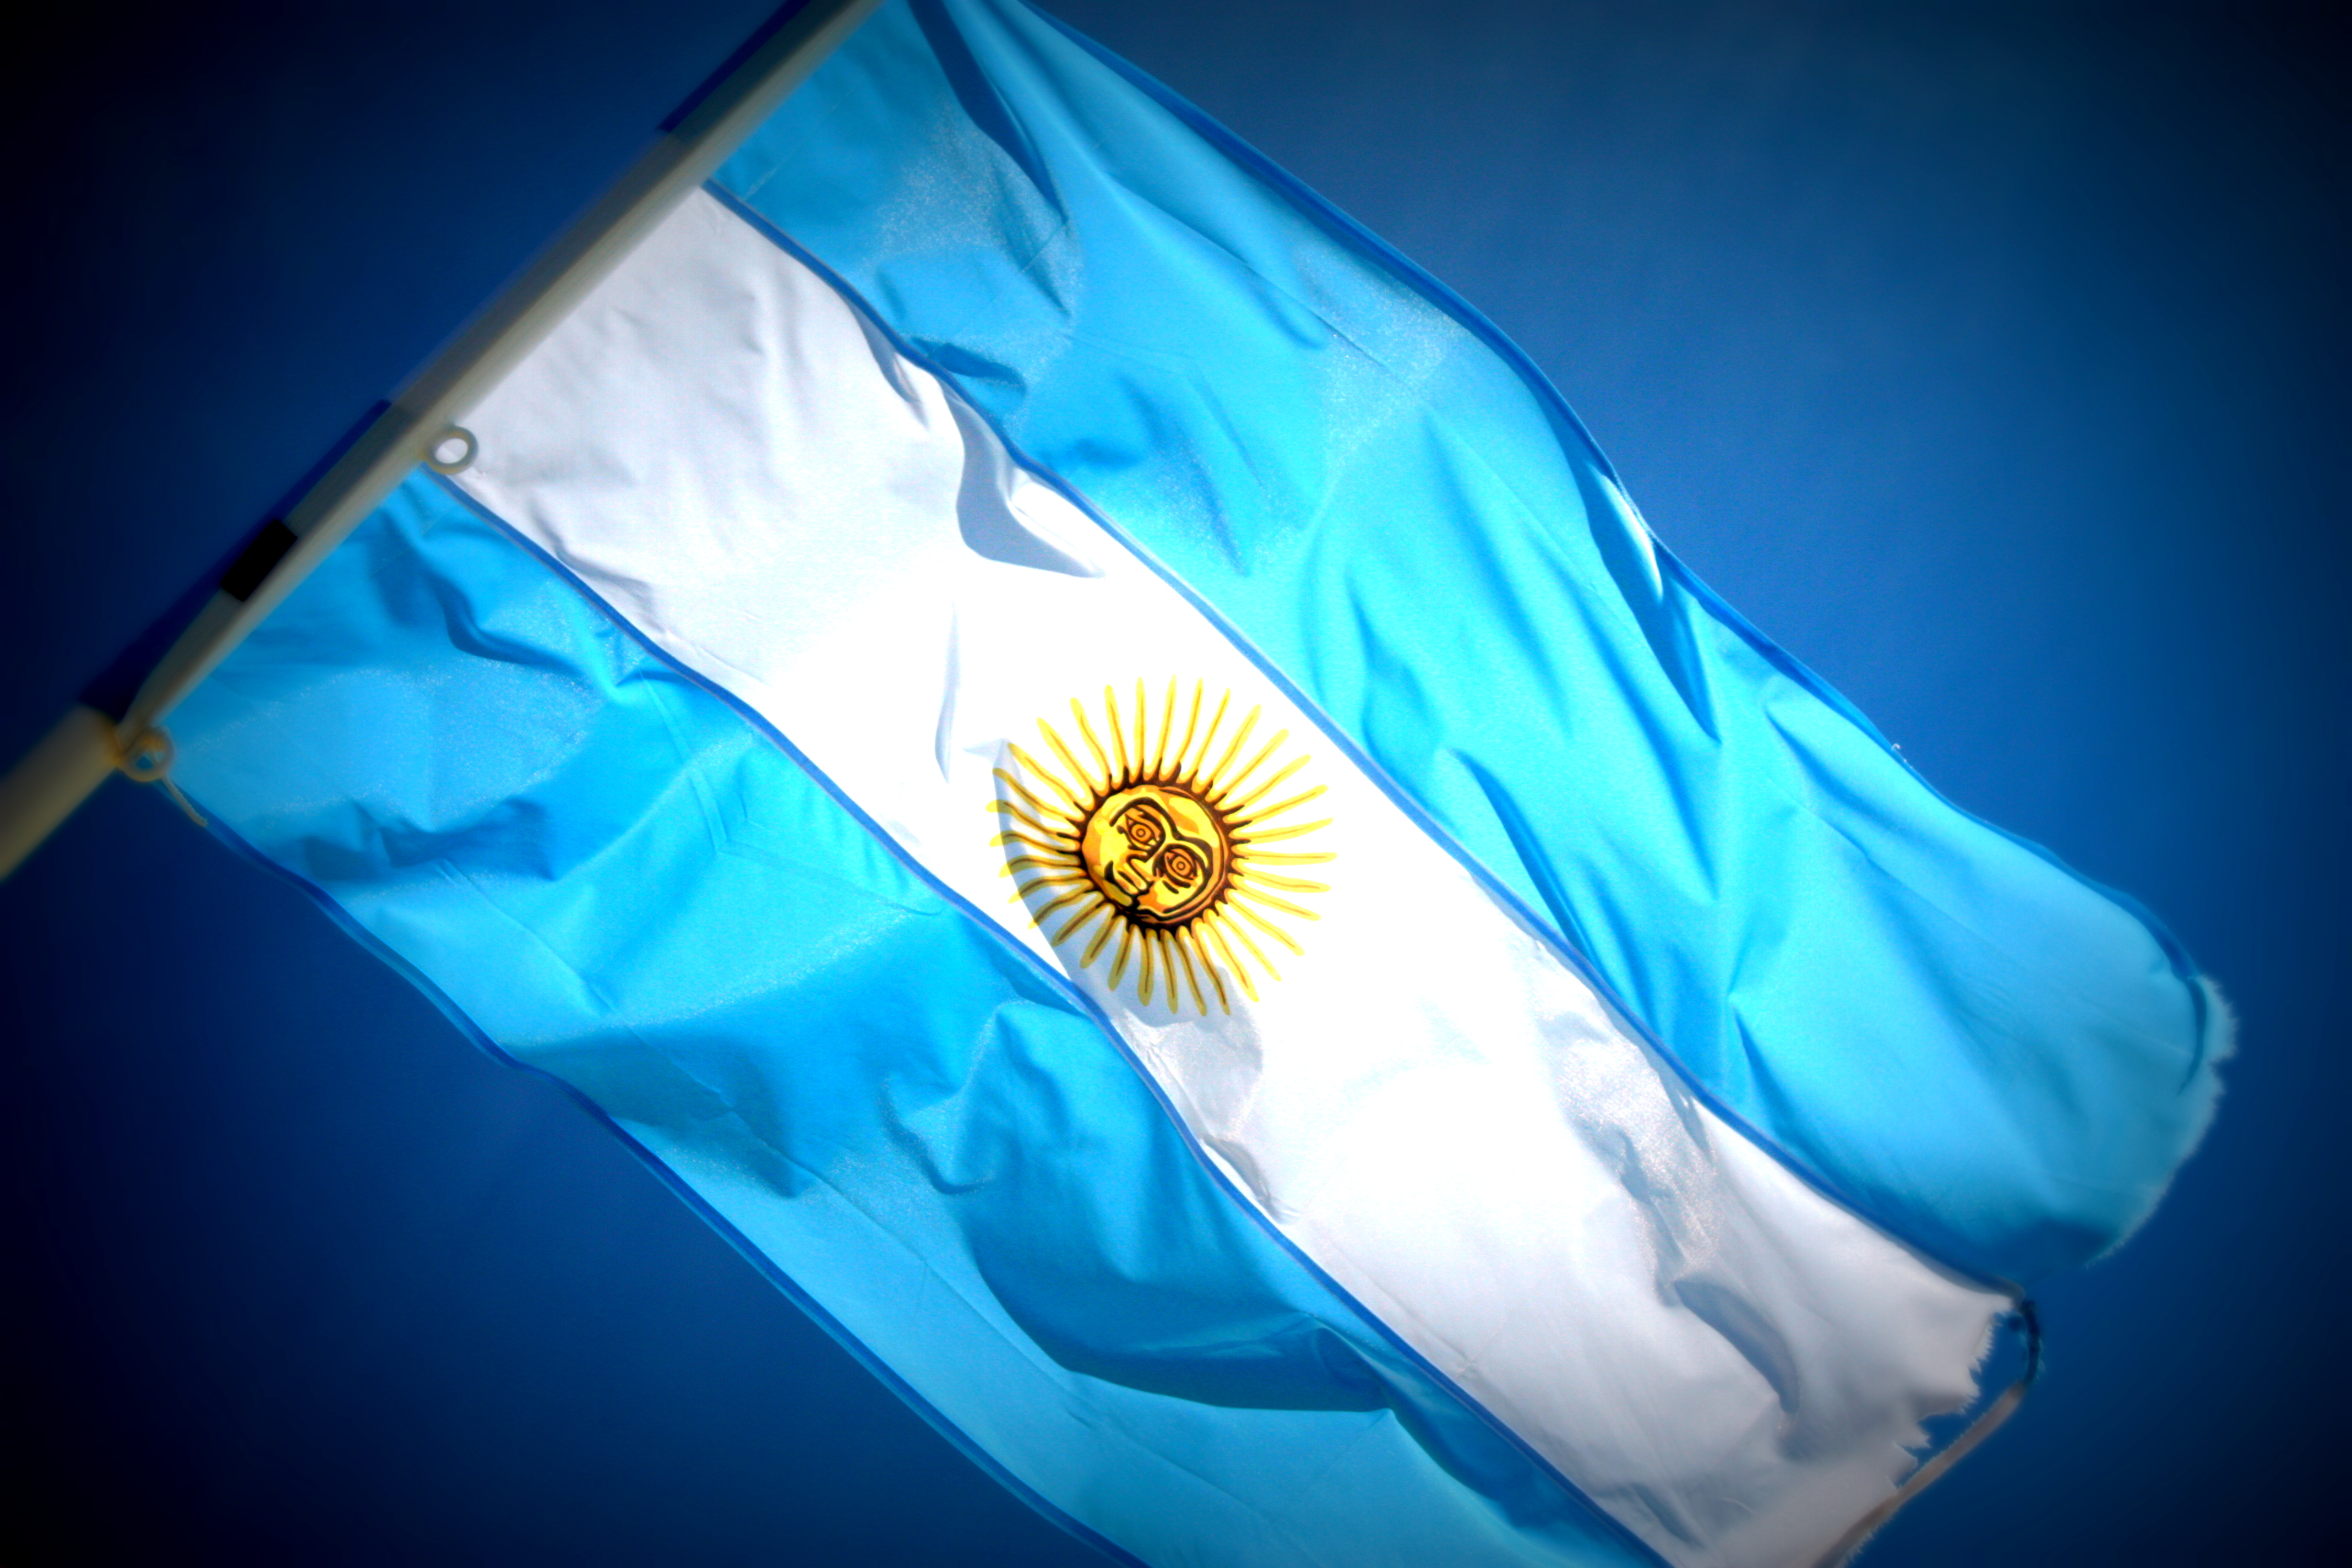 la-bandera-de-la-argentina-argentina-flag-argentina-south-america